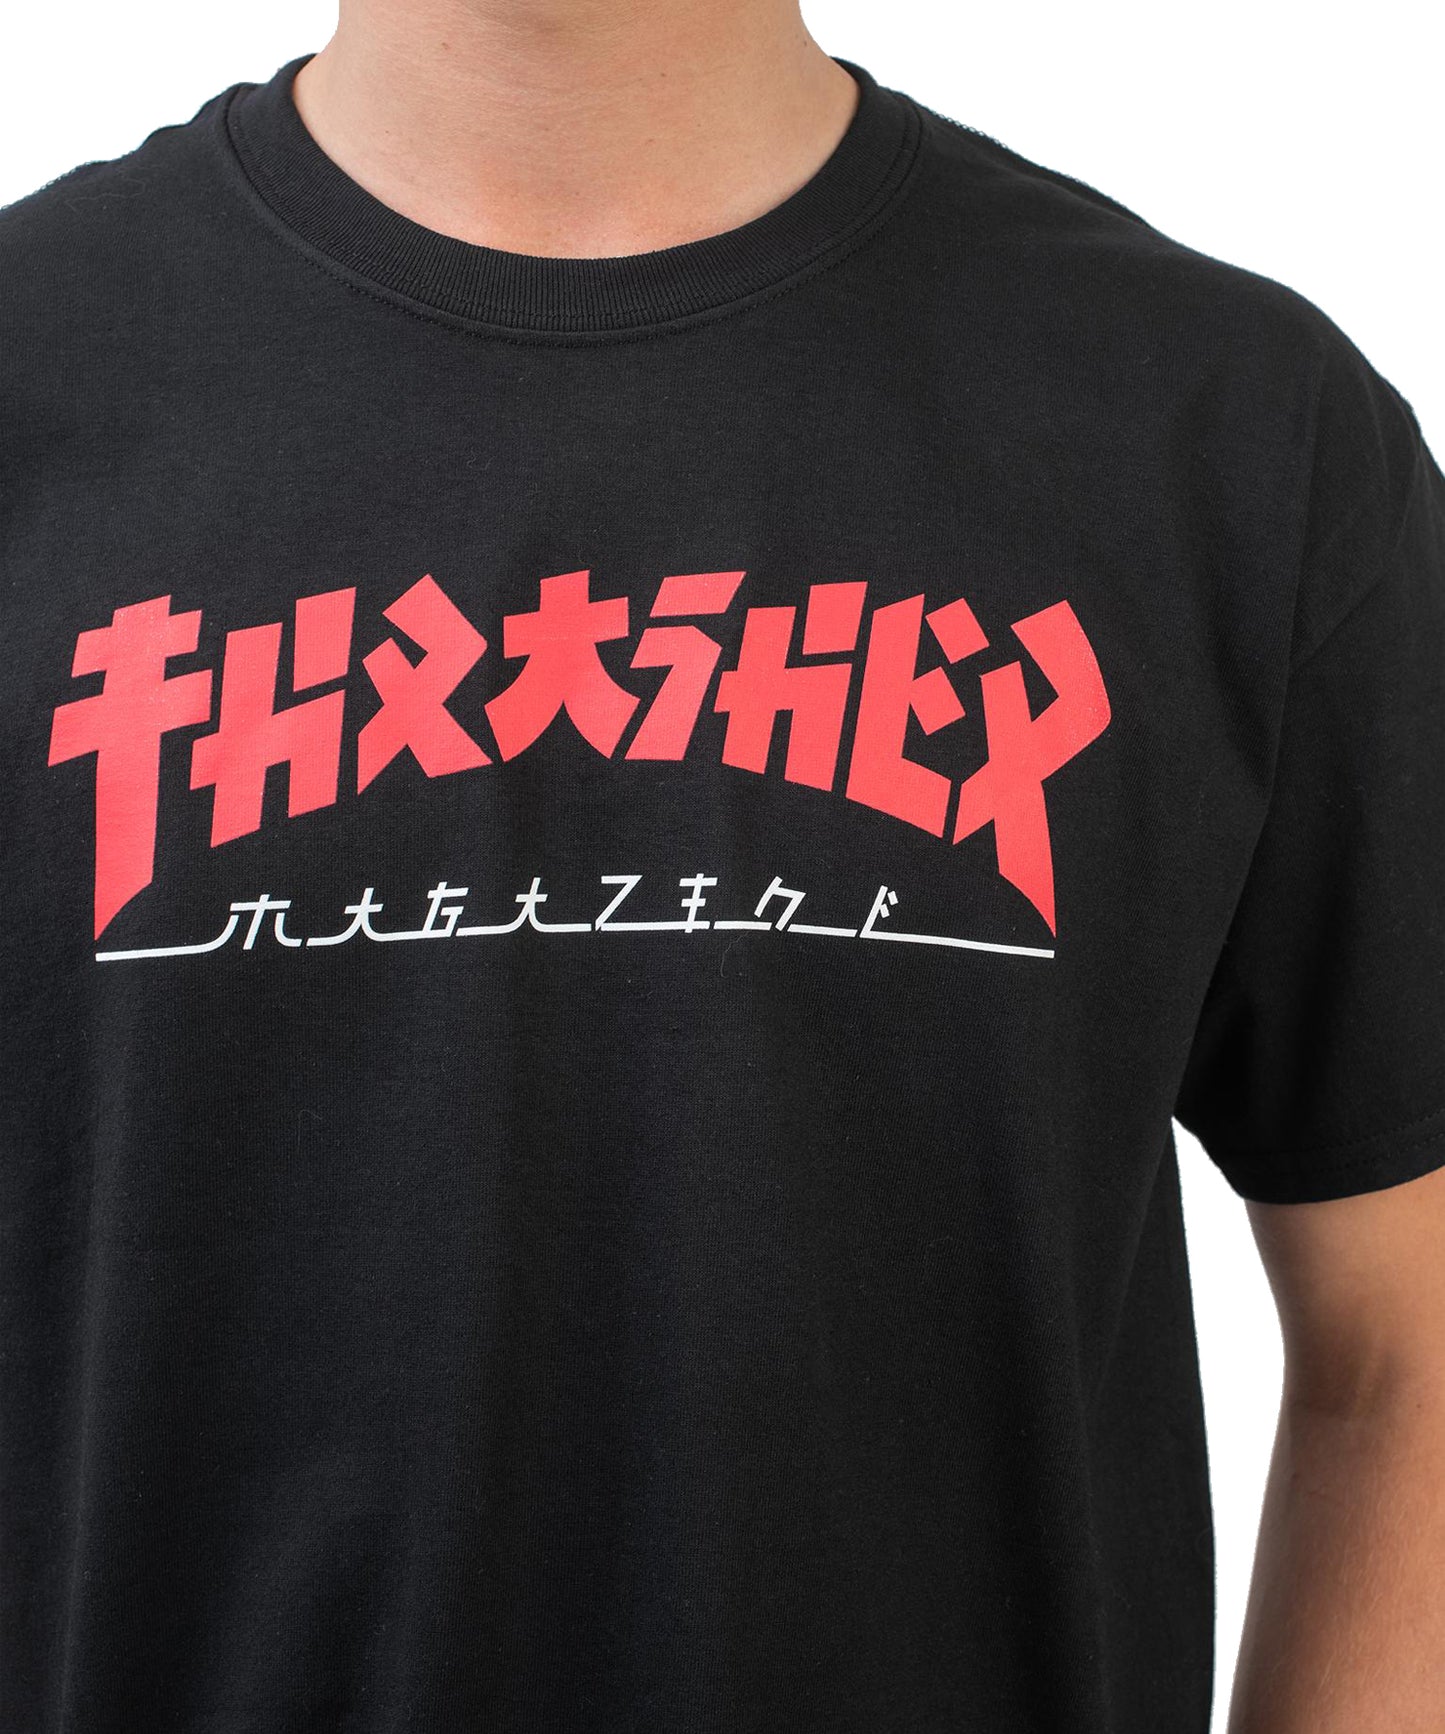 thrasher-godzilla-jade-tee-camiseta-la icónica-camiseta de thrasher-ahora en estilo japonés-algodón 100%-color negro